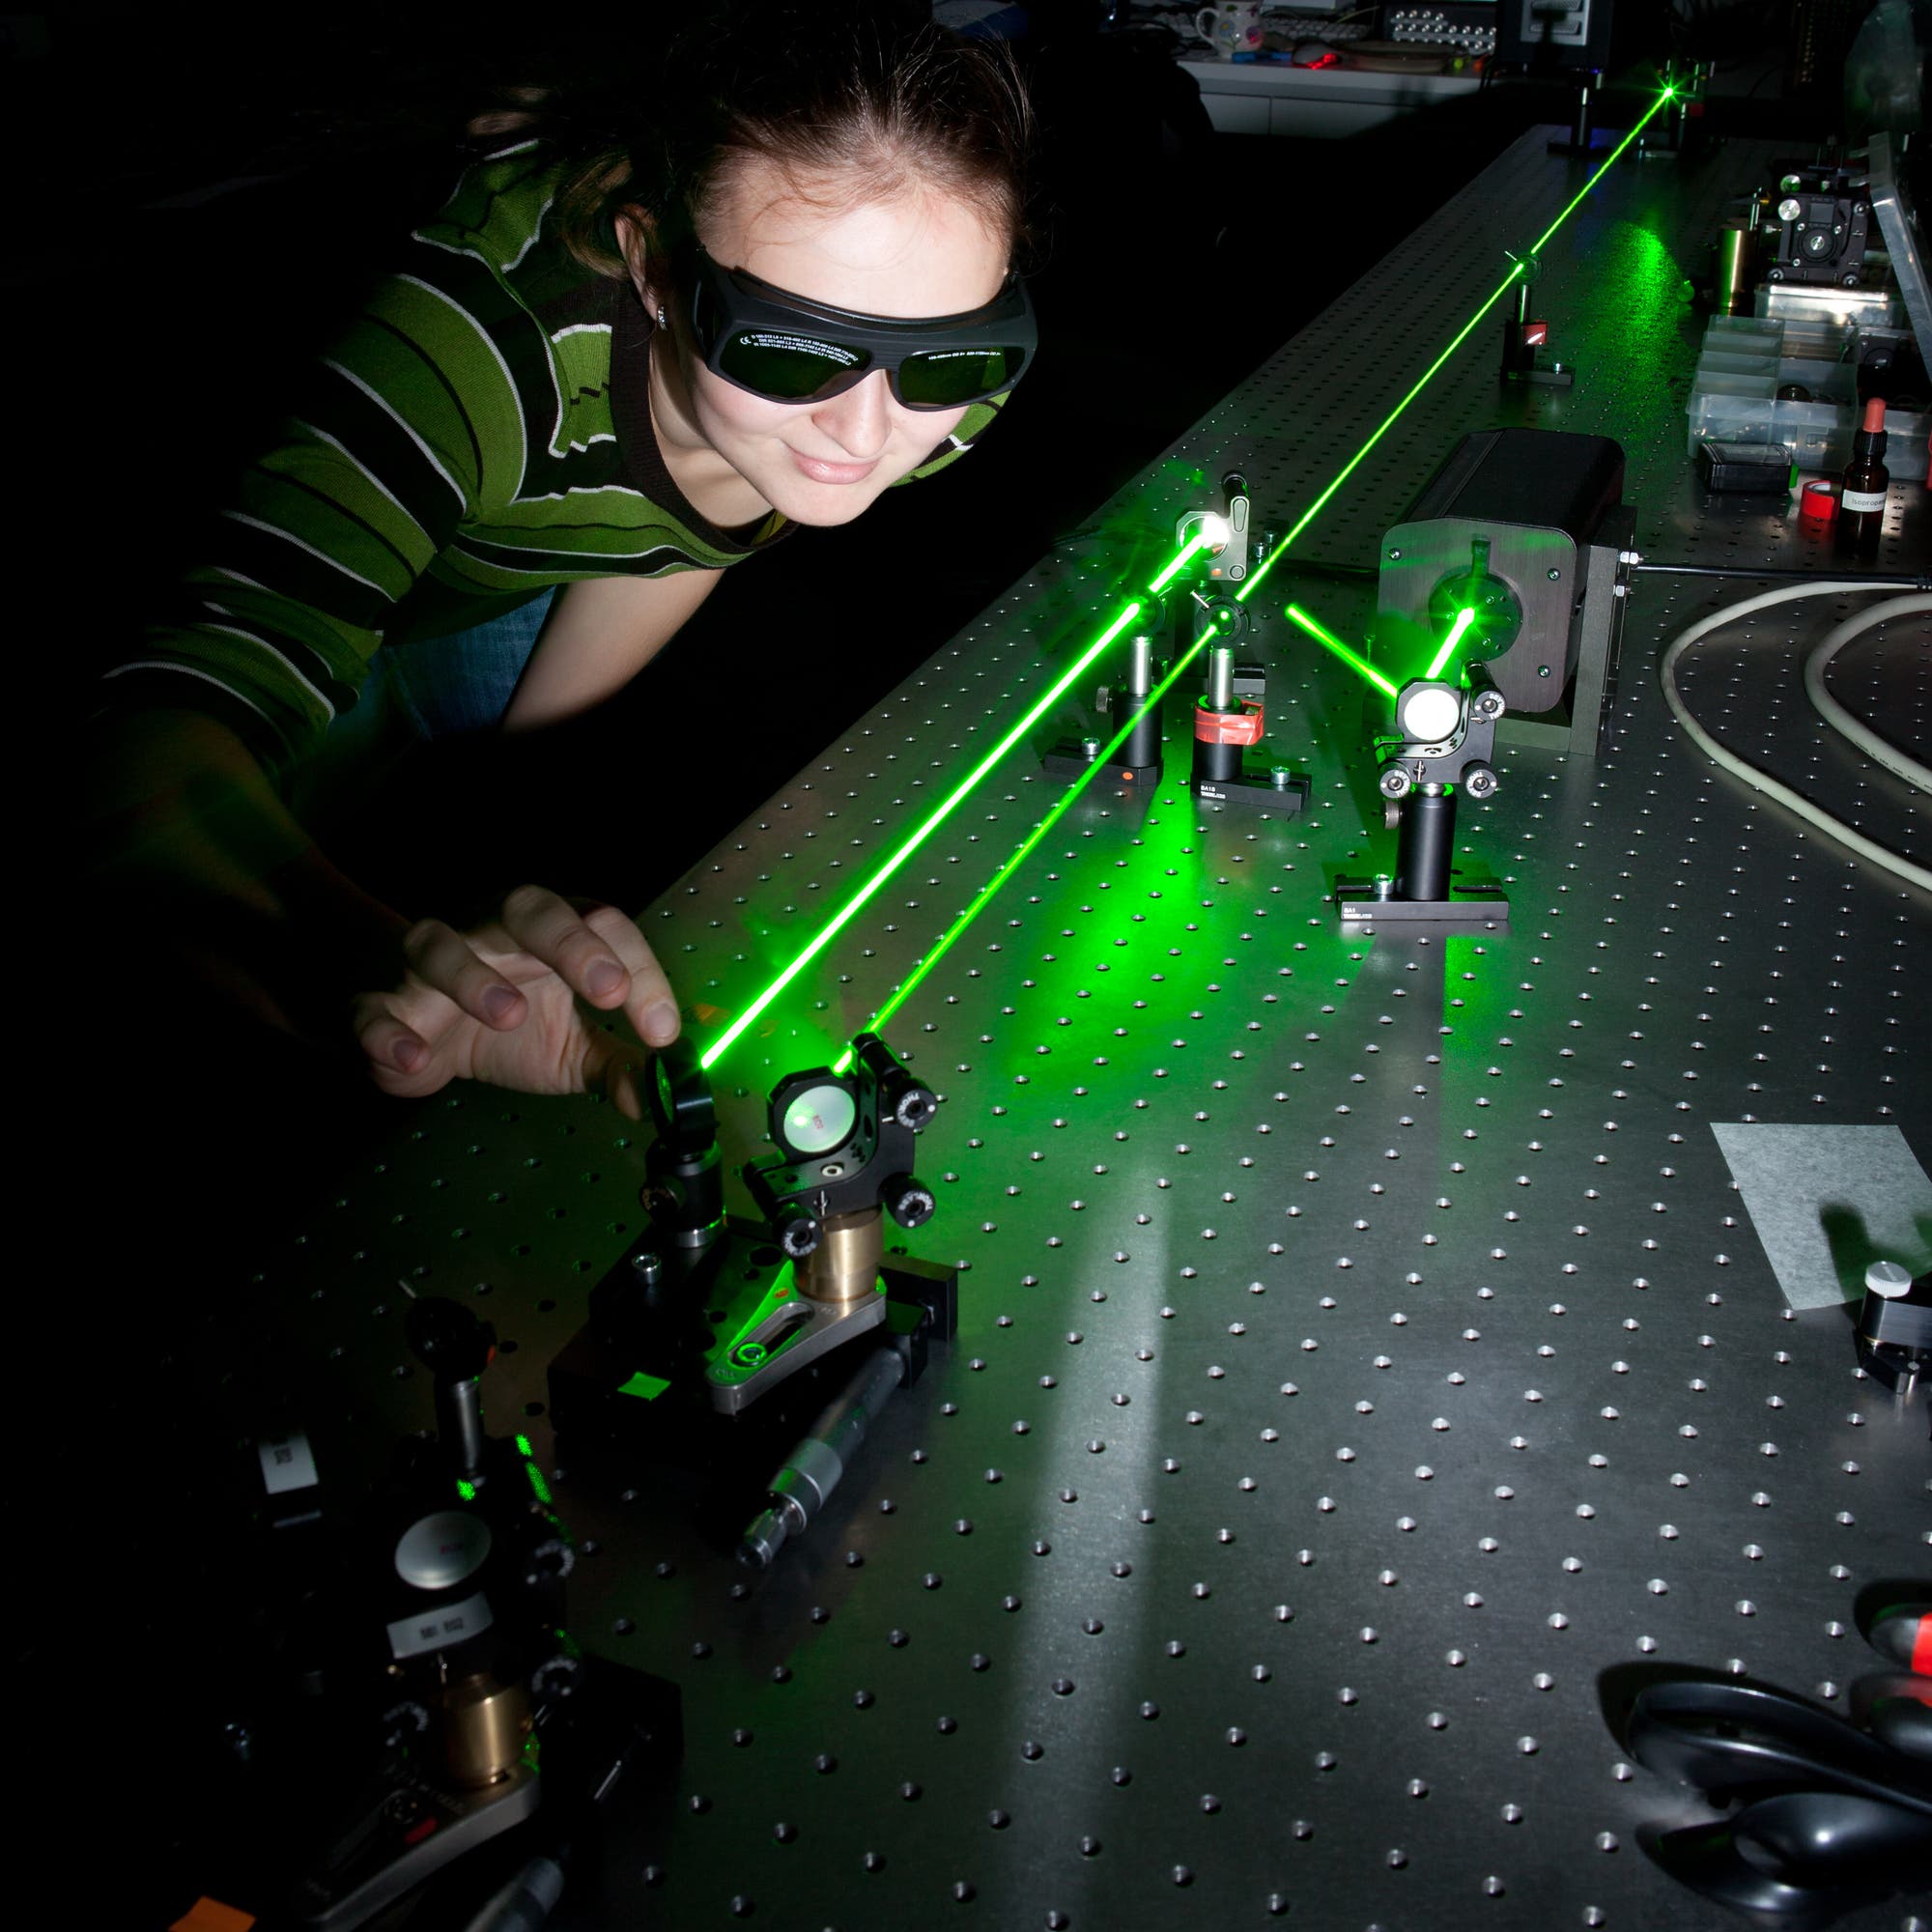 Eine Forscherin an einem Versuchsaufbau mit grünen Lasern, Strahlteilern und Spiegeln.